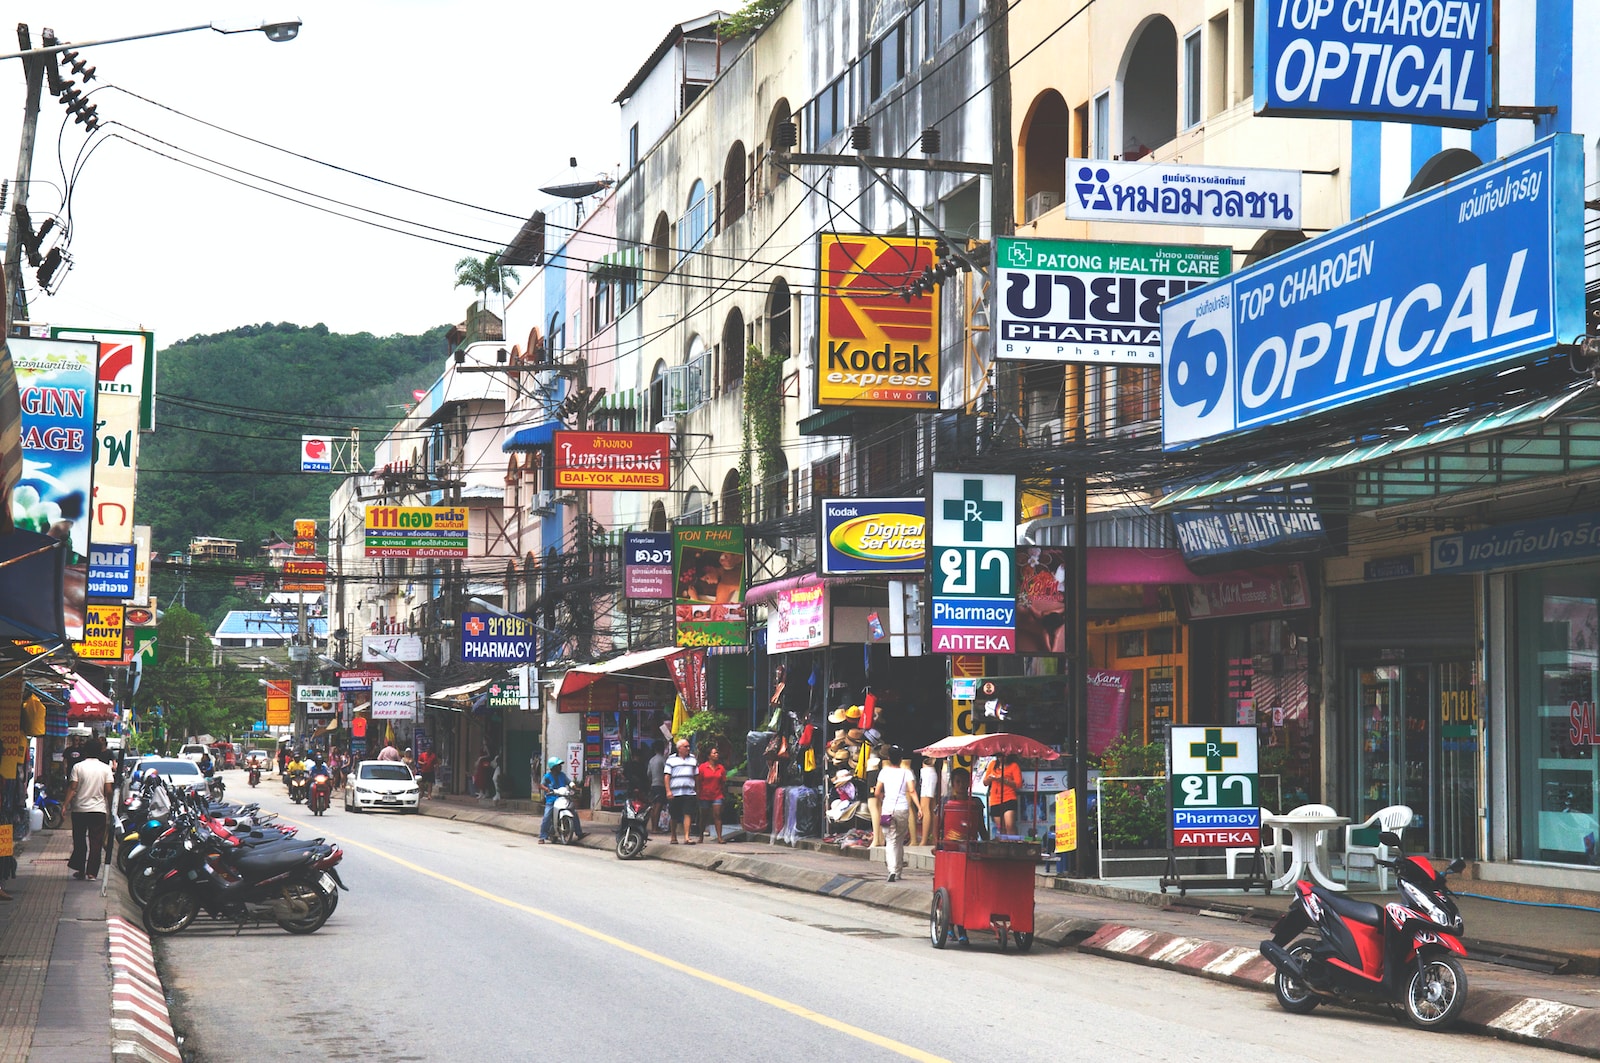 Puede encontrar cajeros automáticos en cada esquina de Phuket. Sin embargo, recomiendo traer mucho dinero en efectivo cuando llegue.